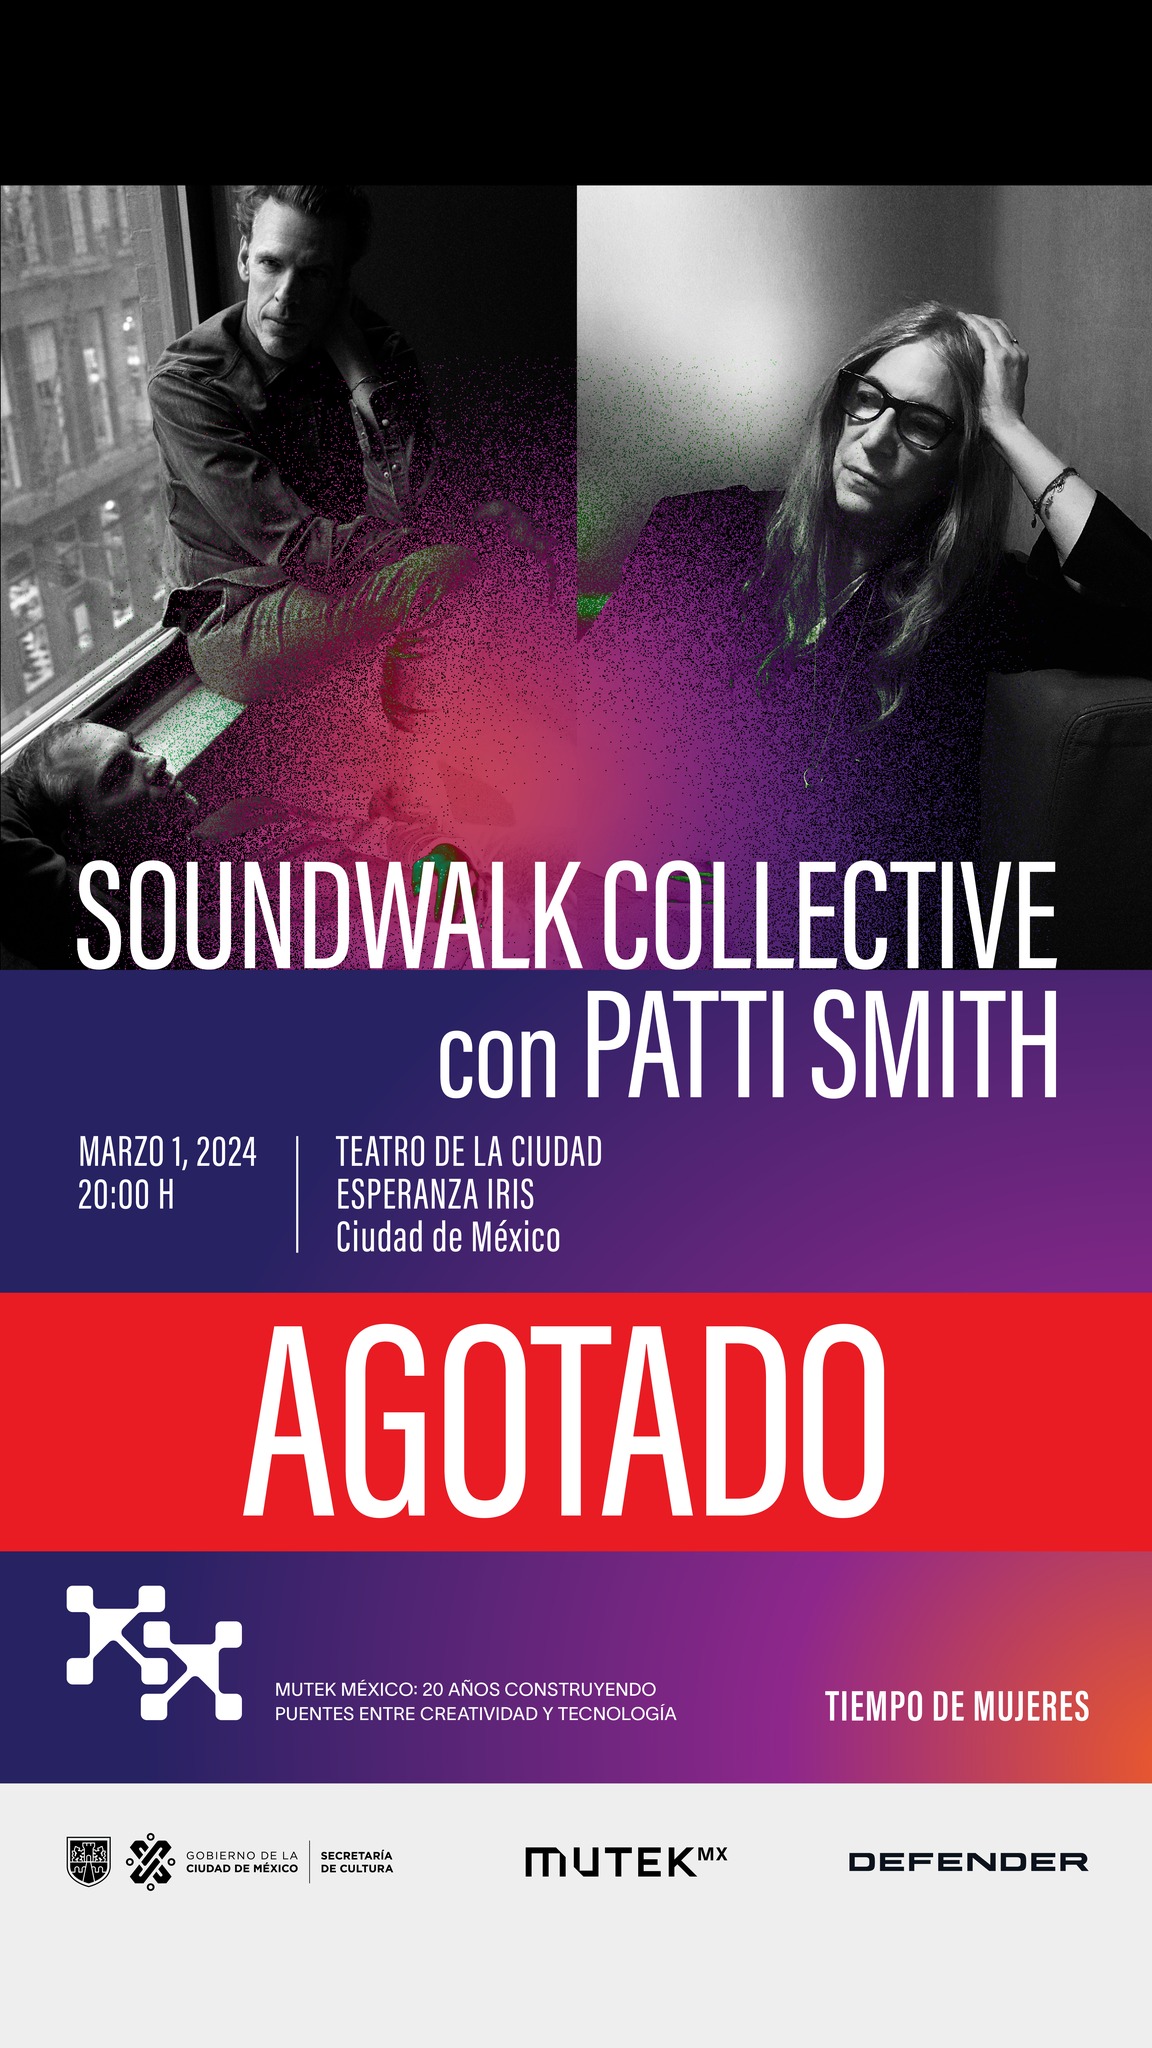 Soundwalk Collective Patti Smith Agotado